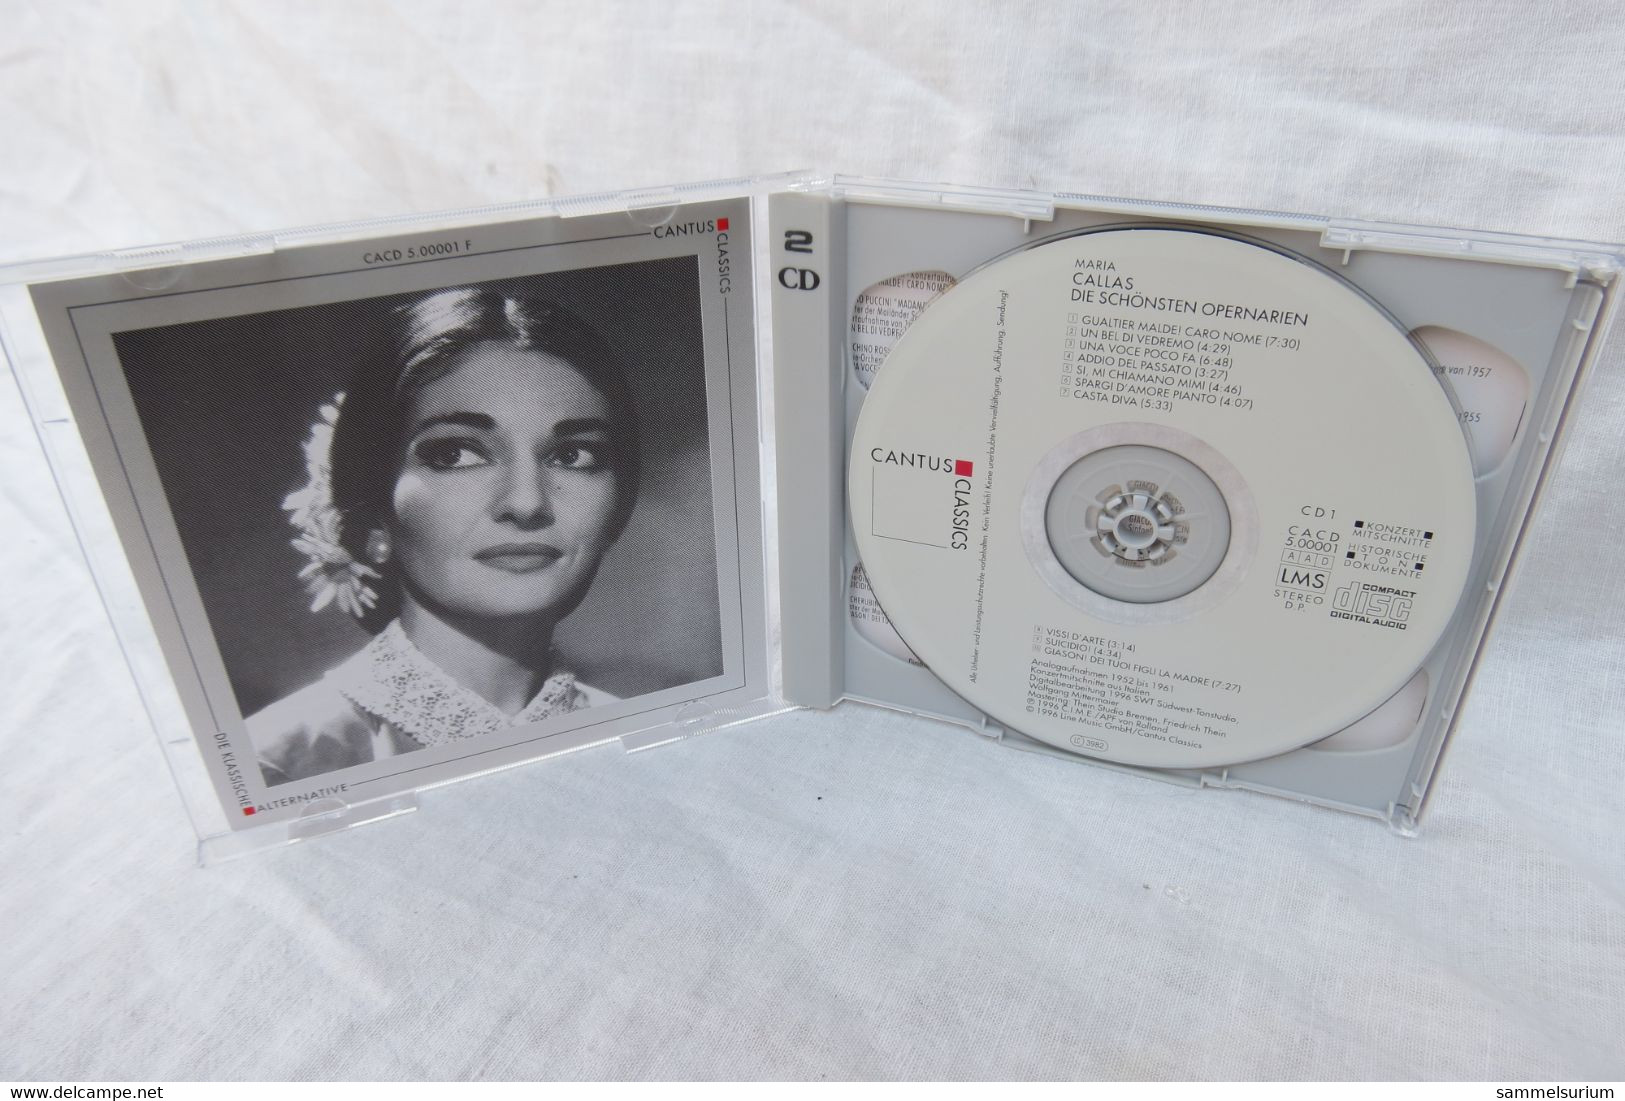 2 CDs "Maria Callas" Die Schönsten Arien - Opera